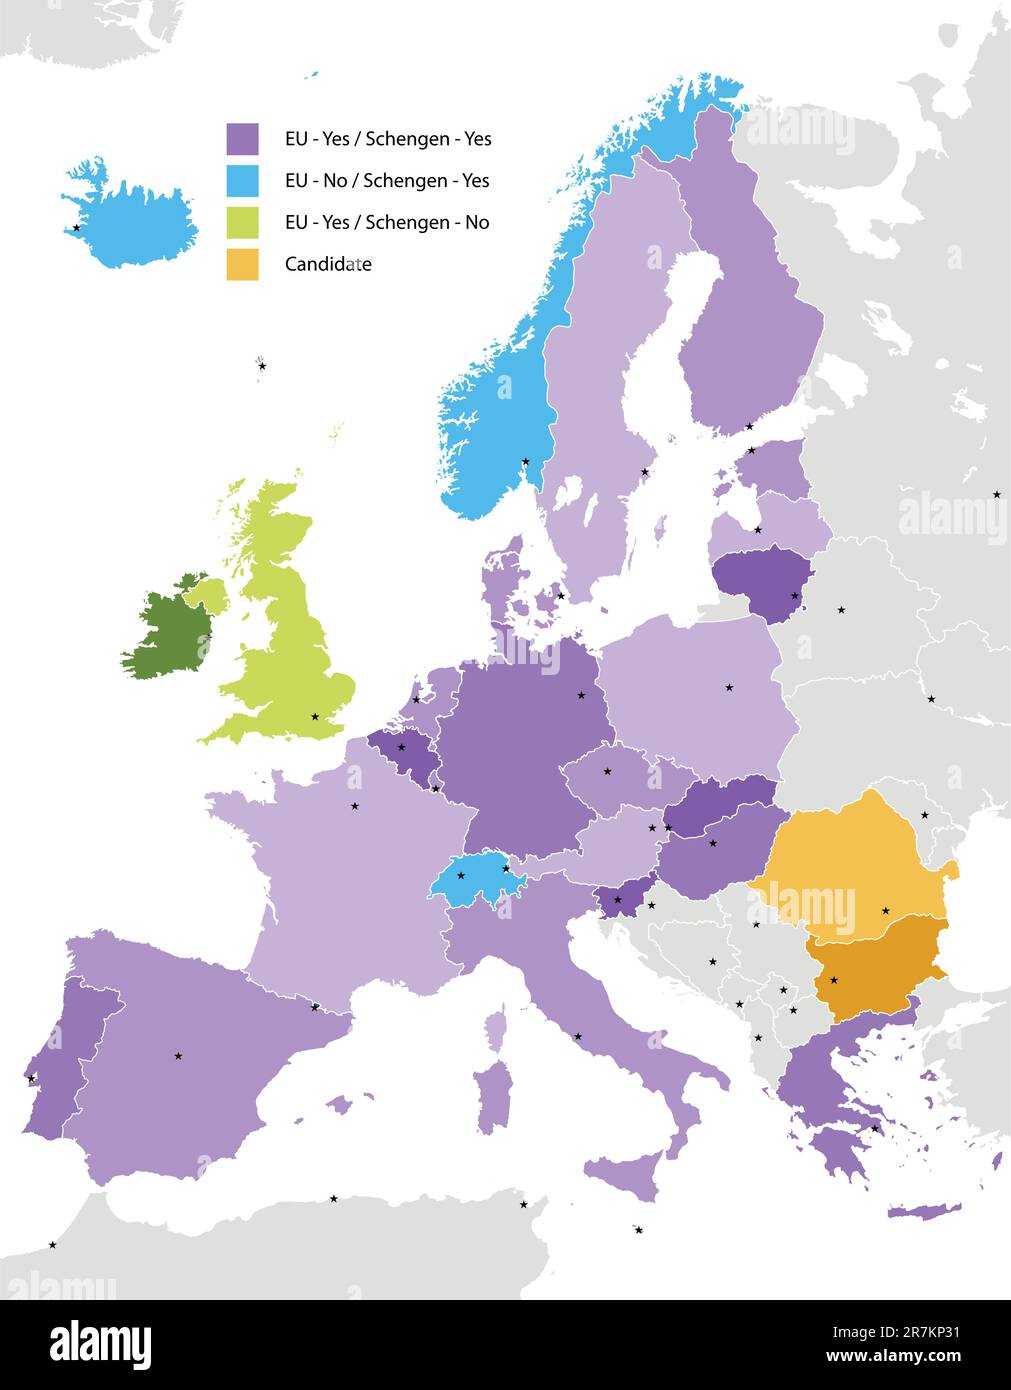 Confine dello spazio Schengen, Europa con sagome dei paesi. Il file EPS contiene livelli separati con il nome della contea, i confini e il livello con Countie... Illustrazione Vettoriale